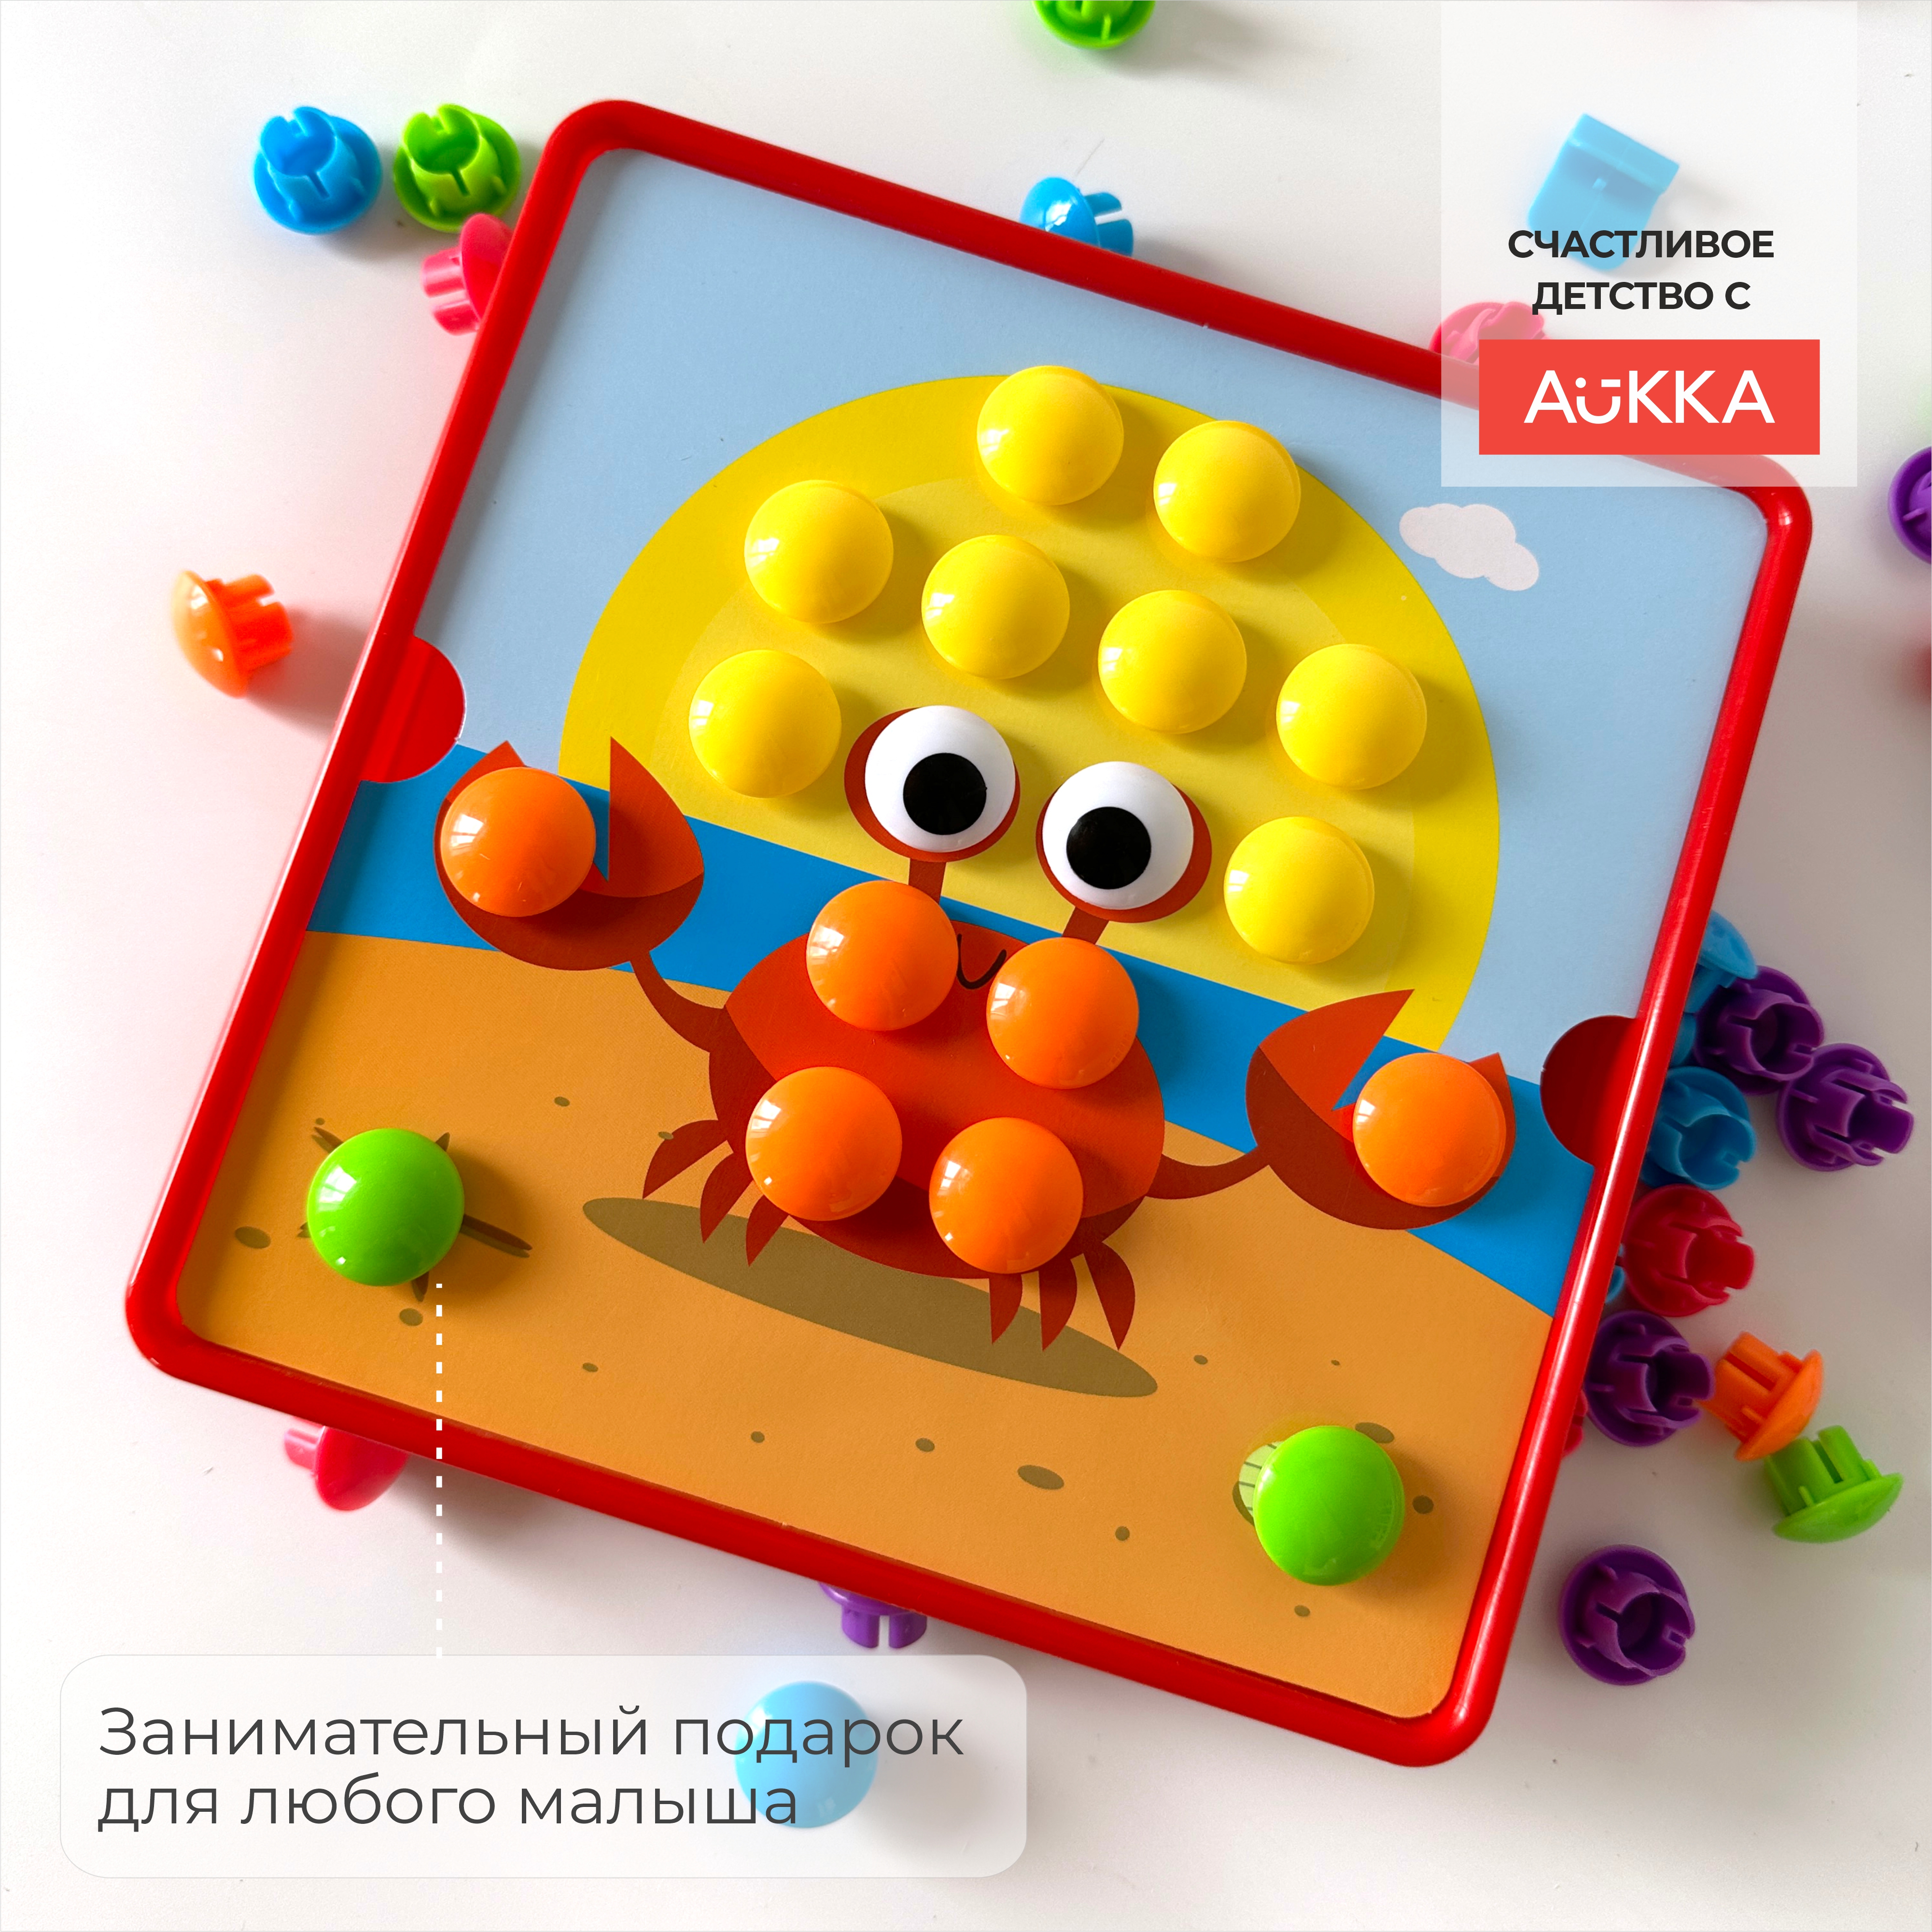 Мозаика AUKKA развивающая игрушка для малышей в подарок - фото 8